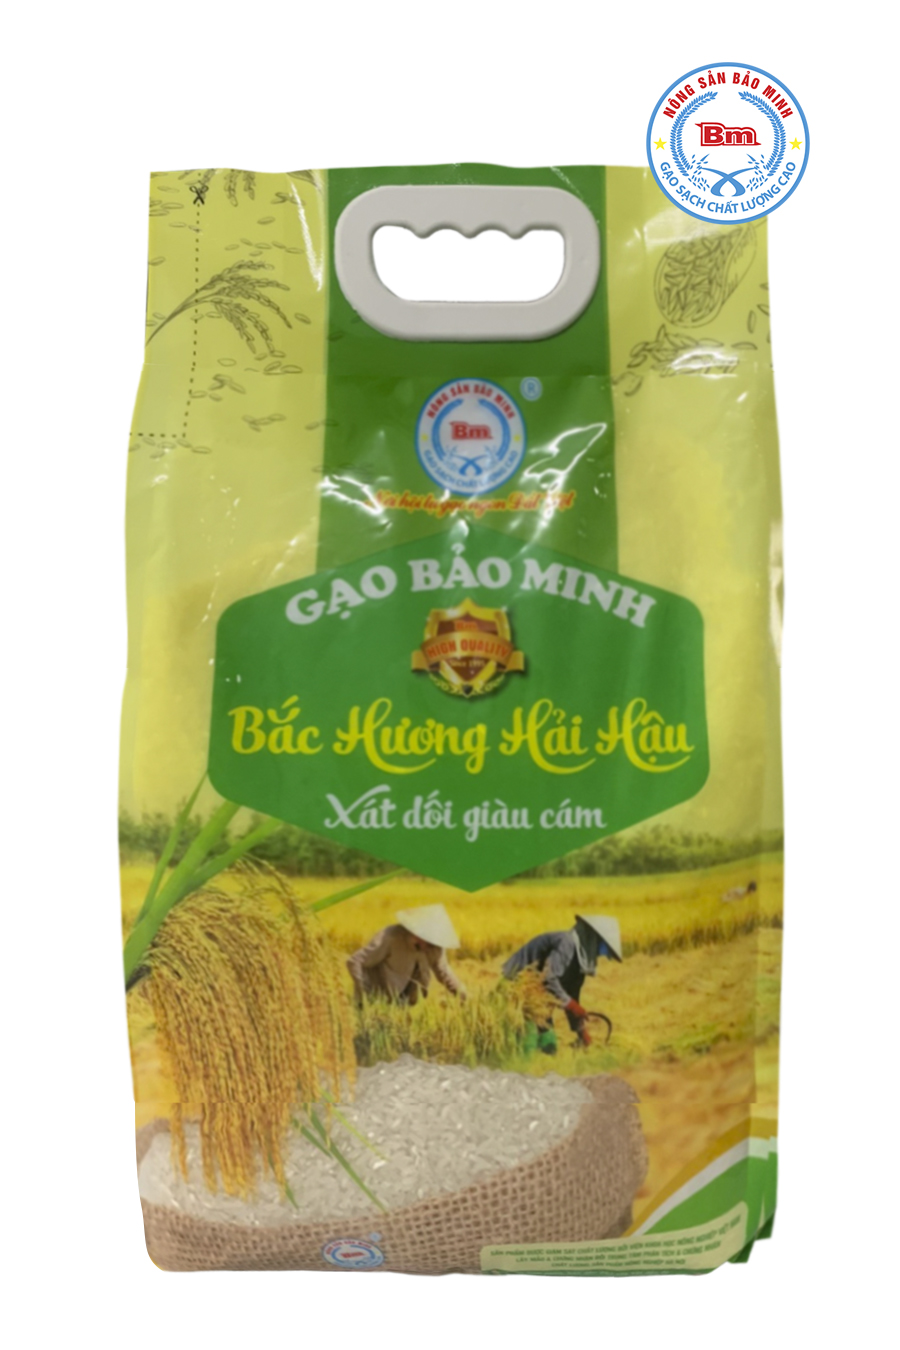 Gạo Bắc Hương Hải Hậu 5kg - Bảo Minh